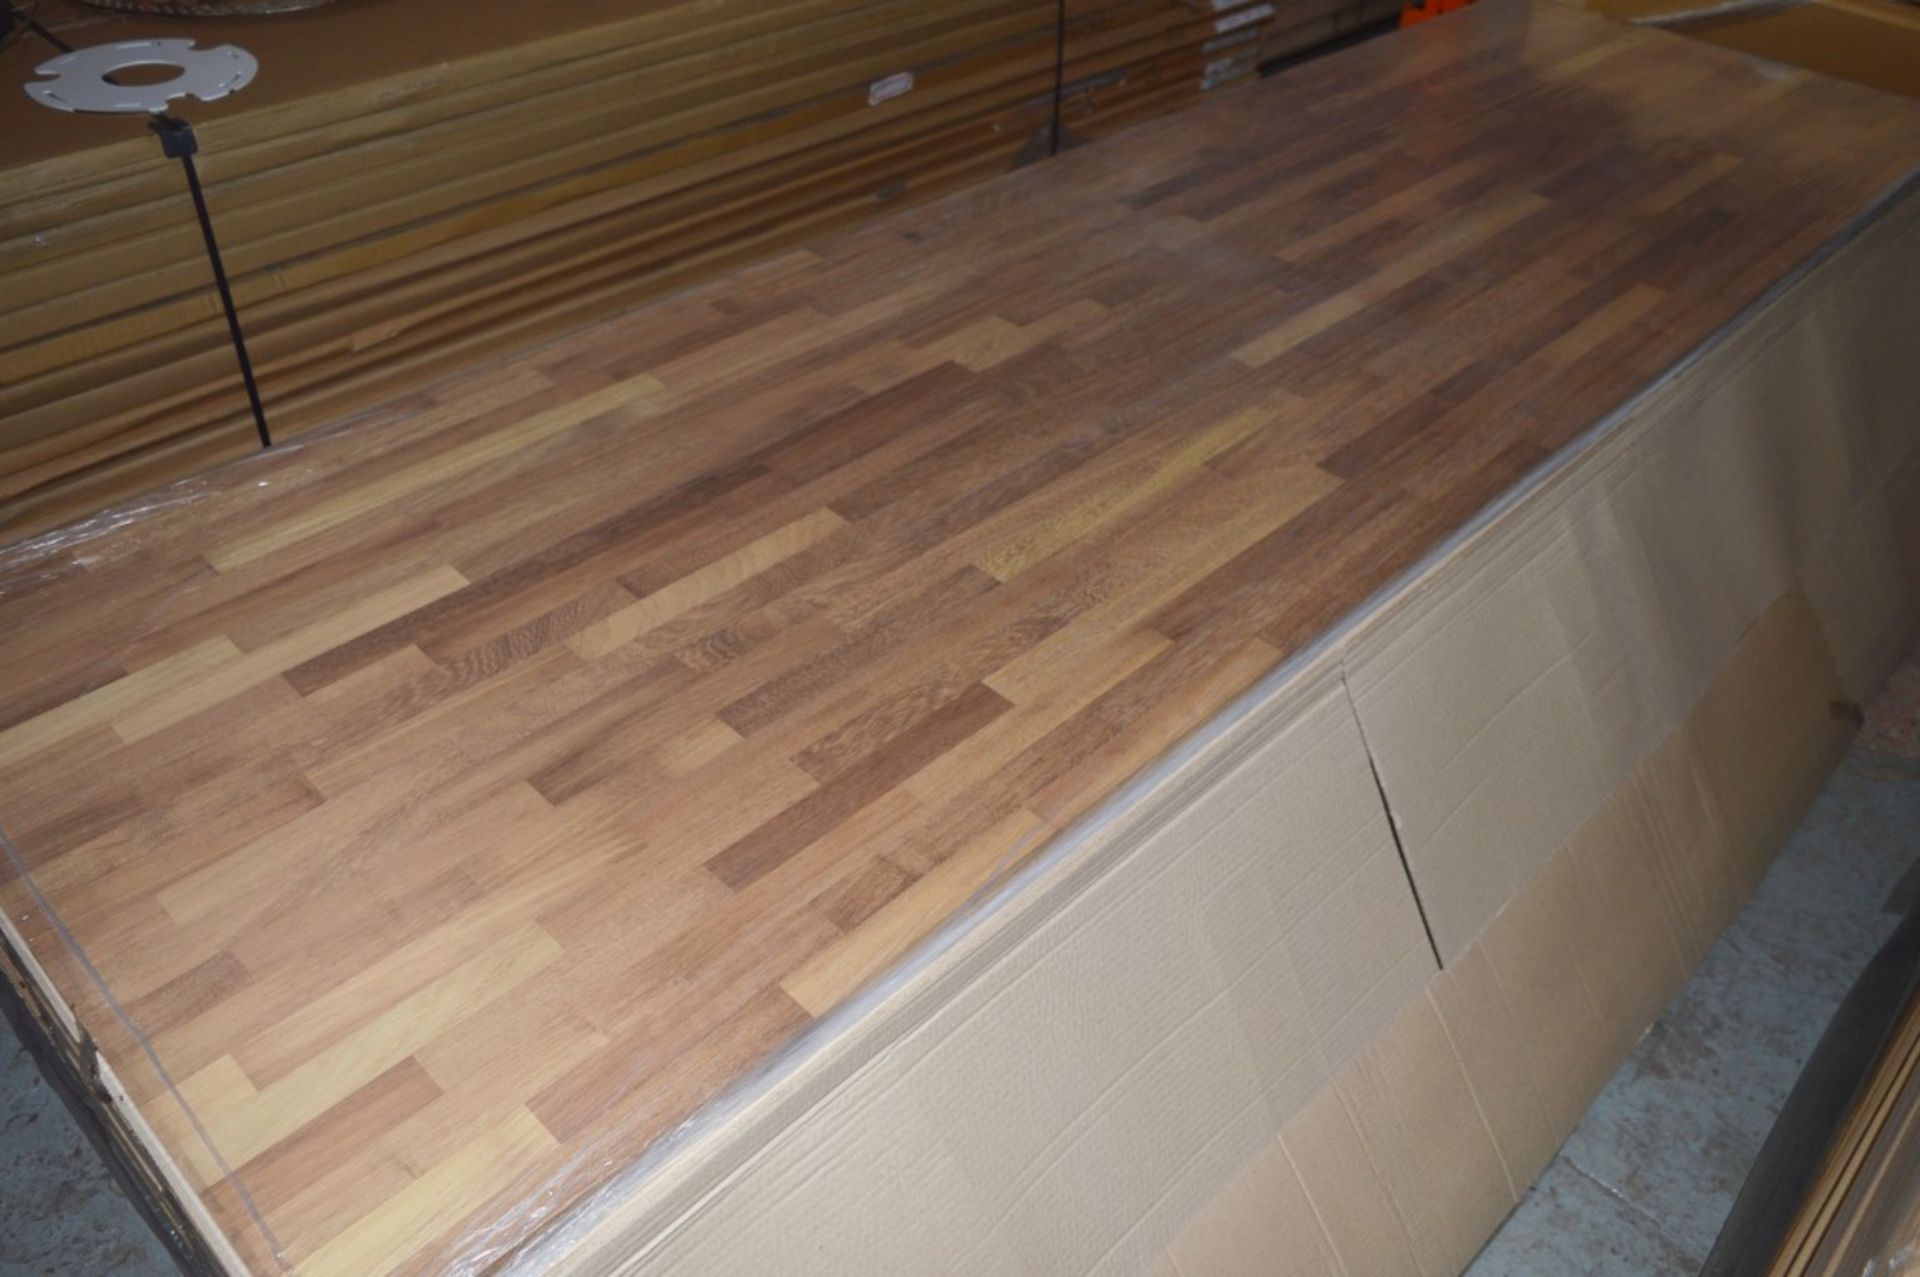 1 x Solid Wood Kitchen Worktop - IROKO - Iroko Blockwood Kitchen Worktop - Size: 3000 x 900 x - Image 2 of 3